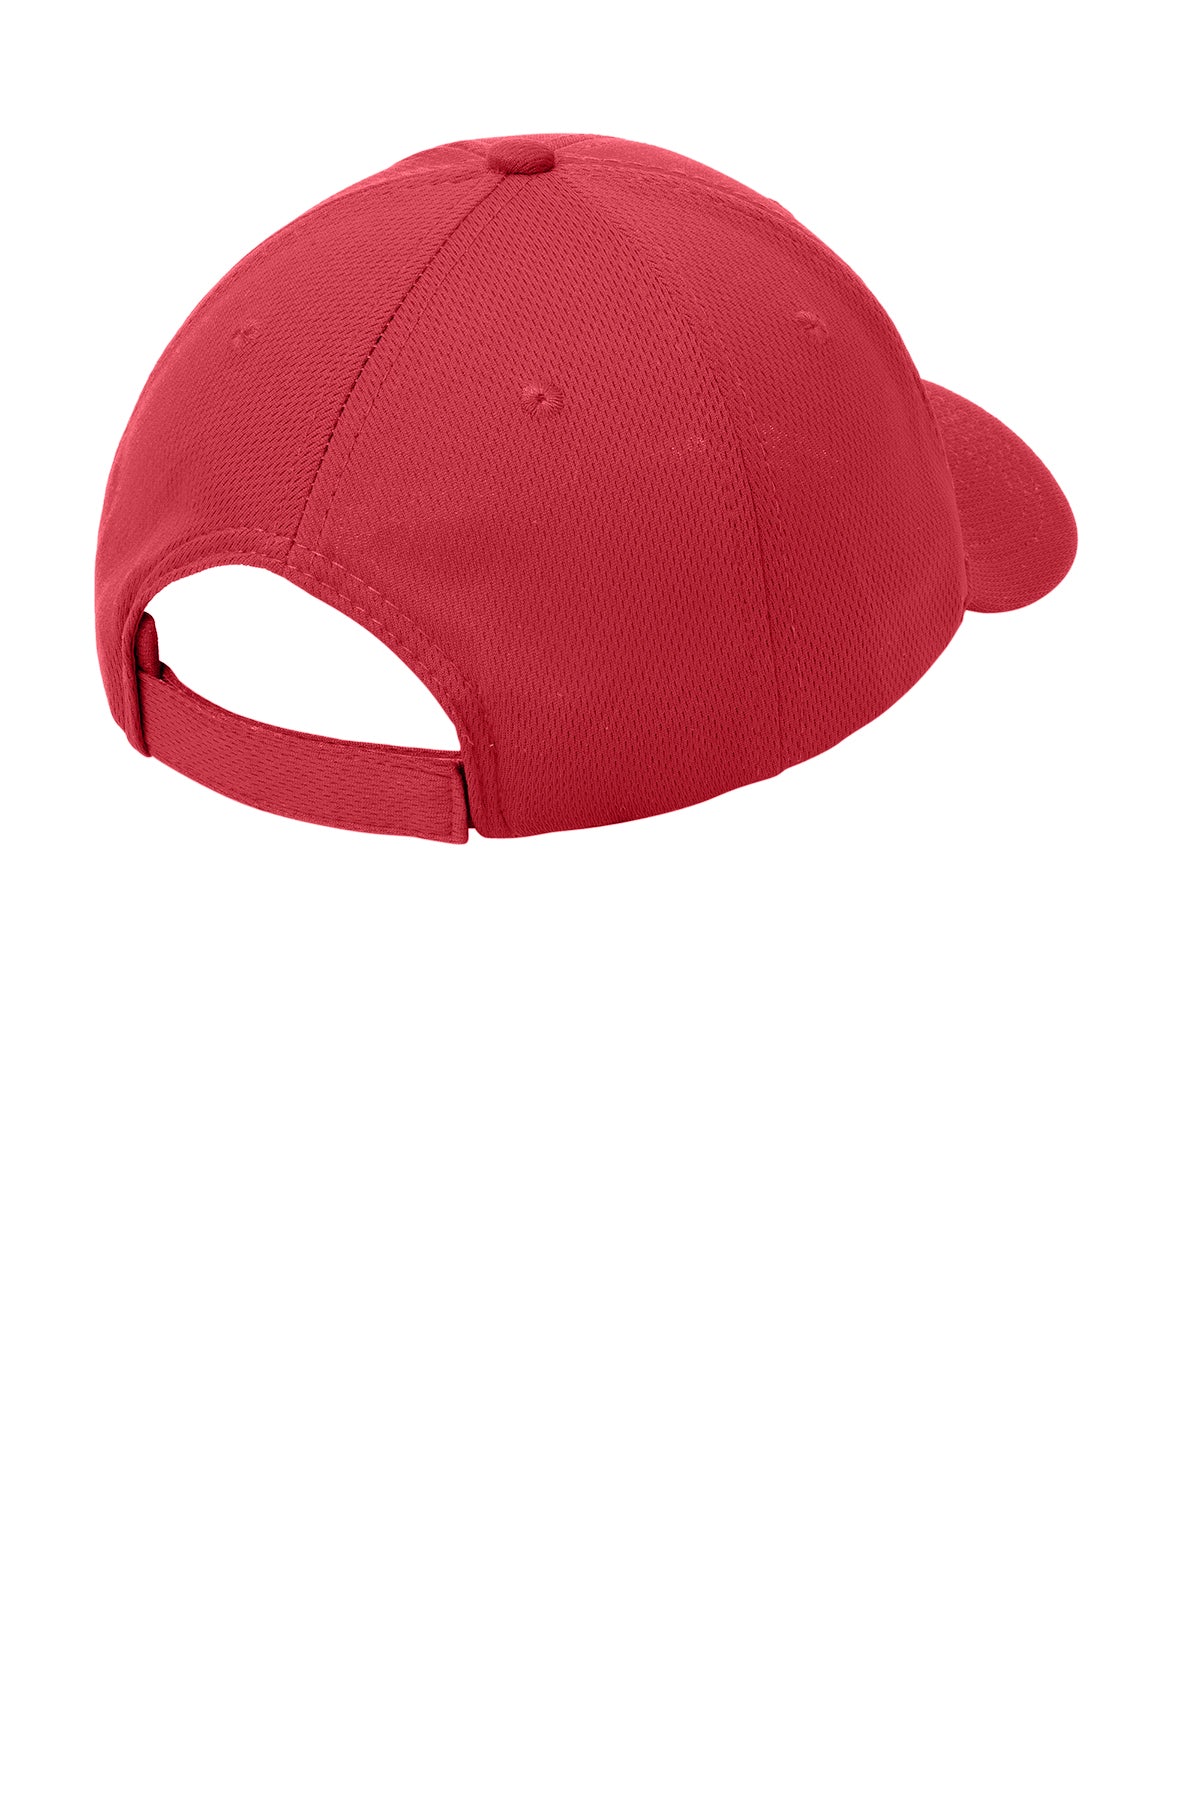 Sport-Tek PosiCharge RacerMesh Custom Caps, True Red